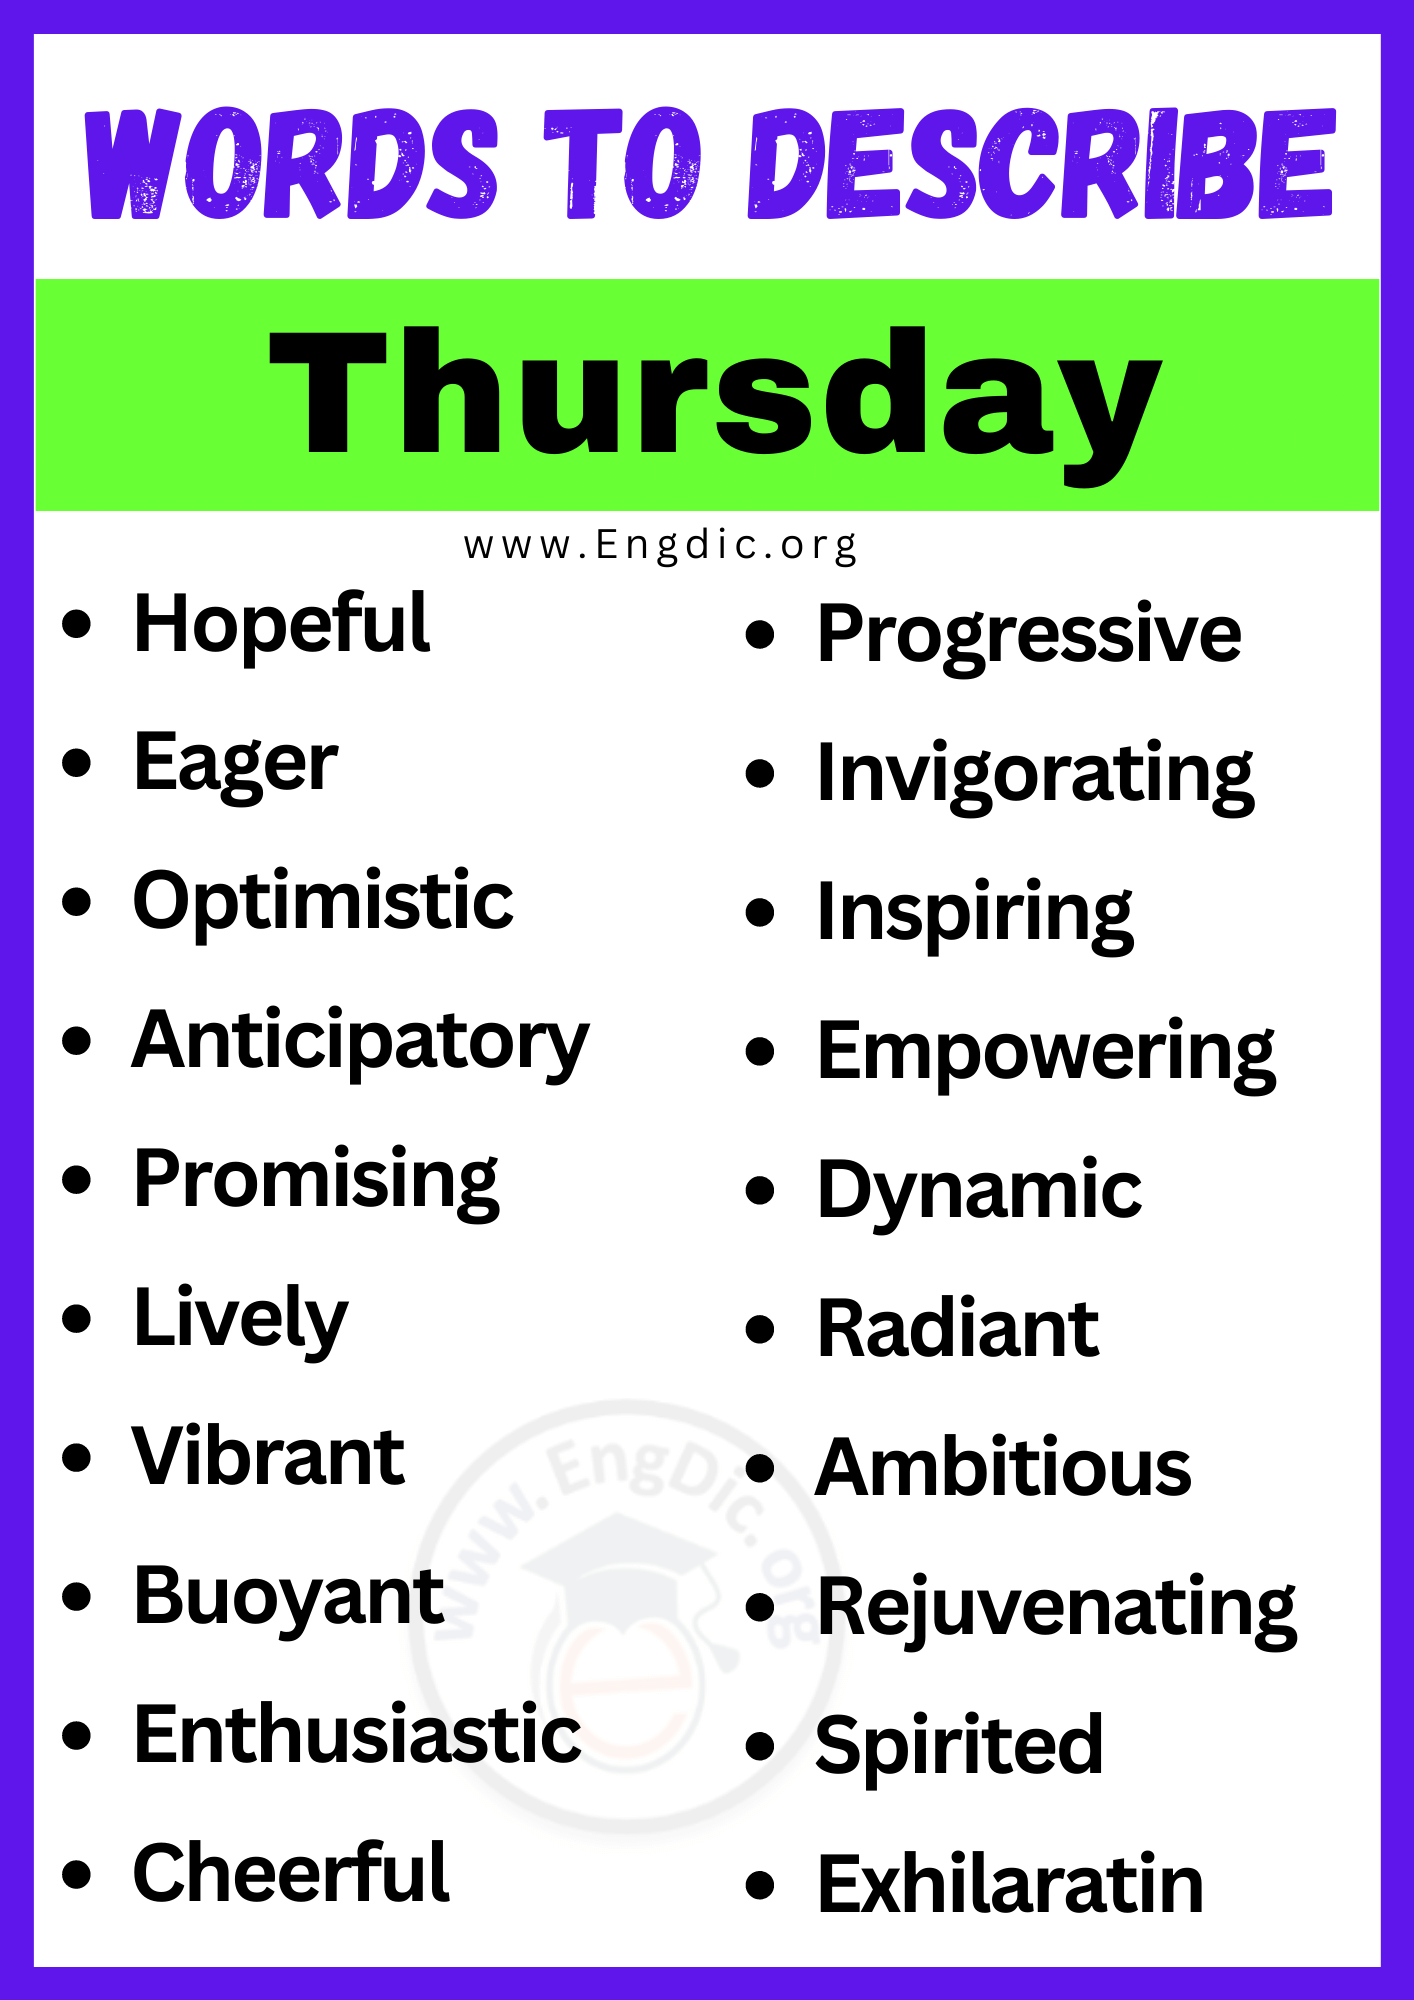 Words to Describe Thursday